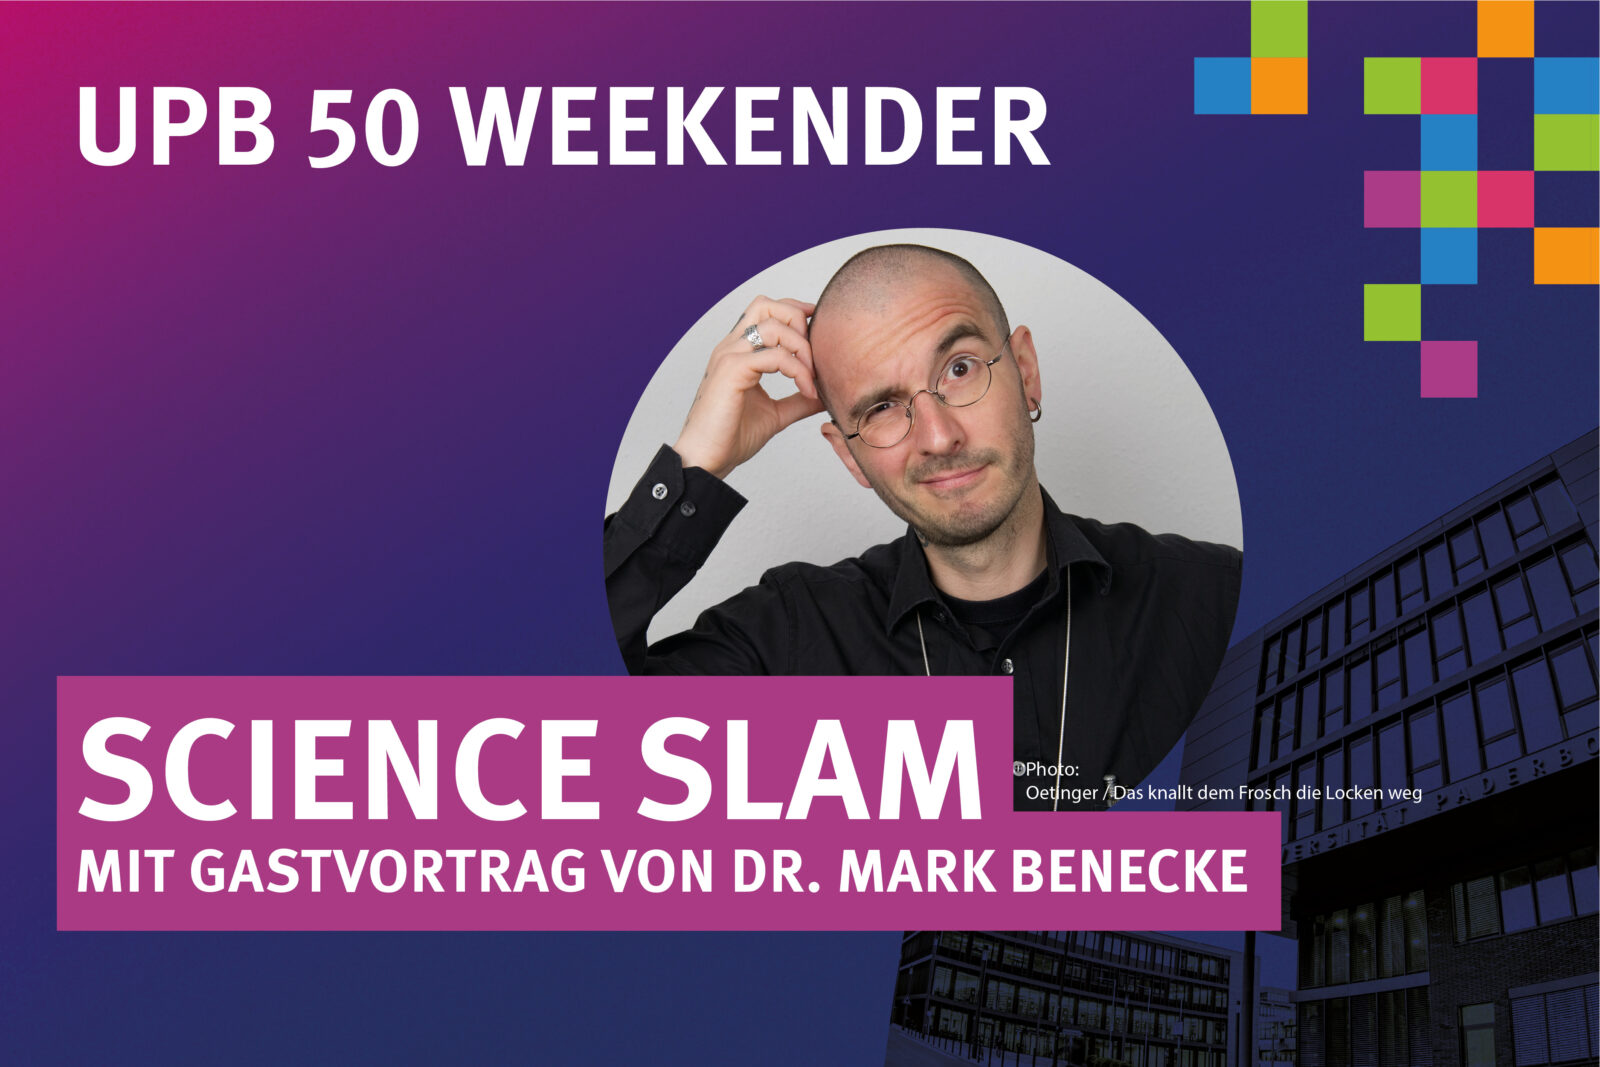 UPB 50 WEEKENDER – SCIENCE SLAM mit Gastvortrag von Dr. Mark Benecke